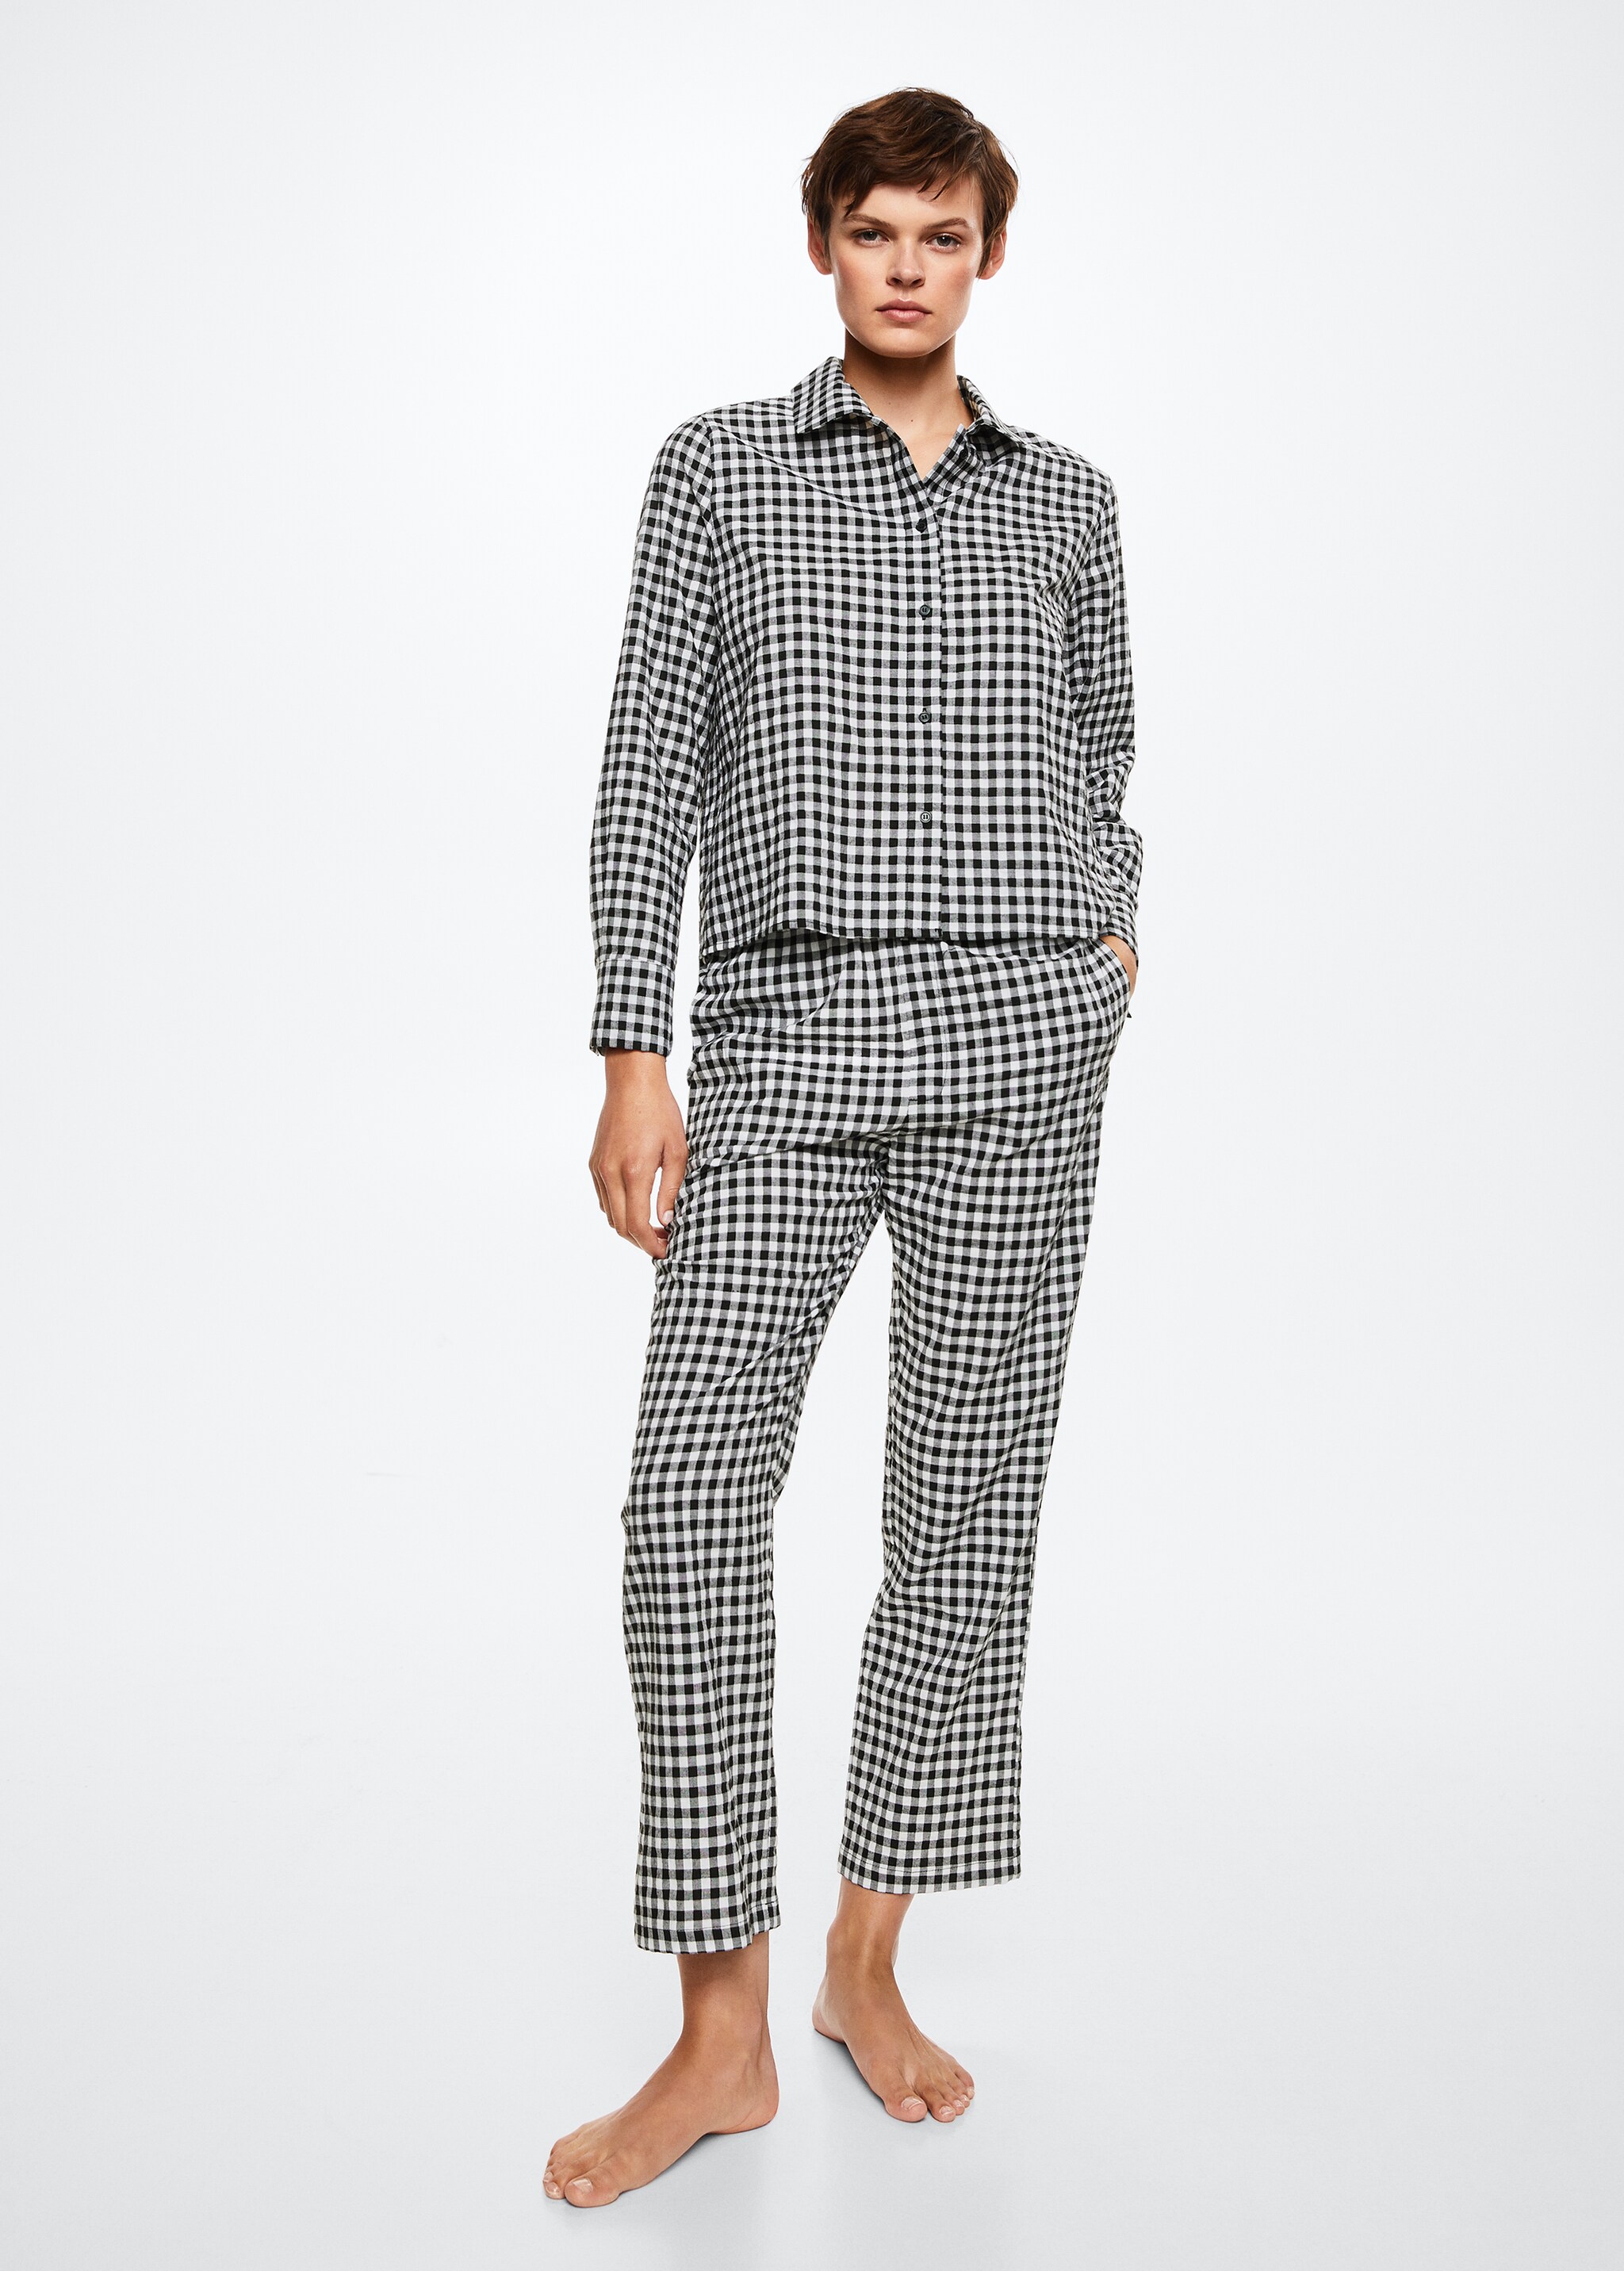 Chemise pyjama carreaux flanelle - Plan général